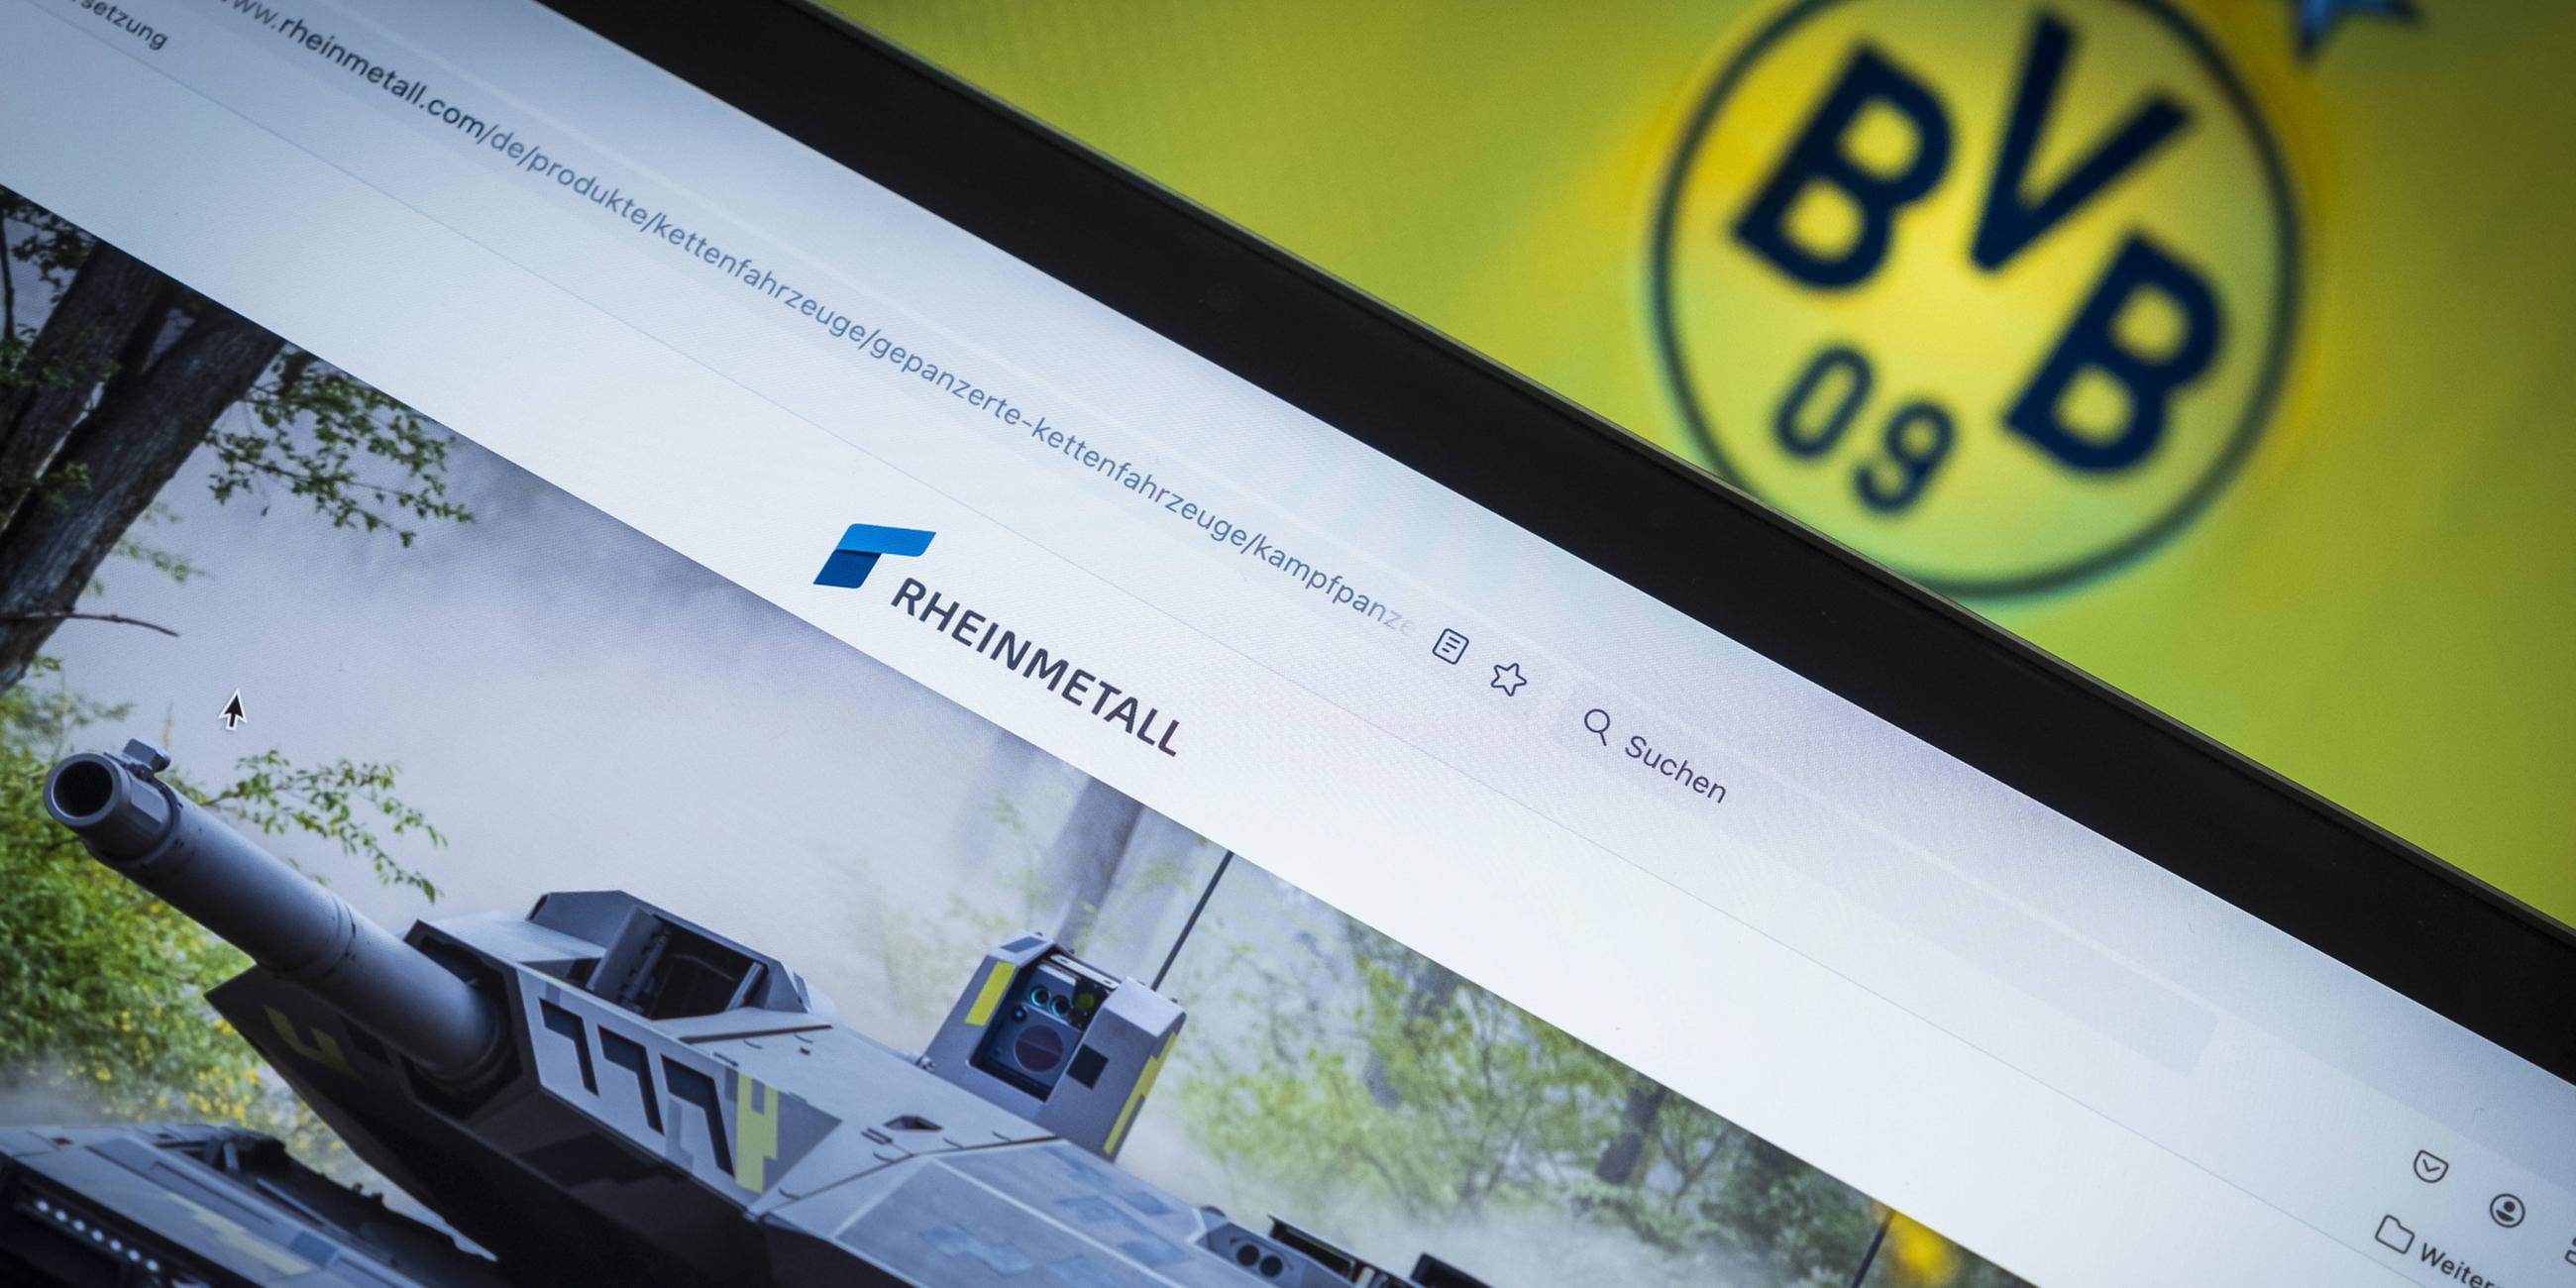 Rheinmetall wird neuer Sponsor von Borussia Dortmund